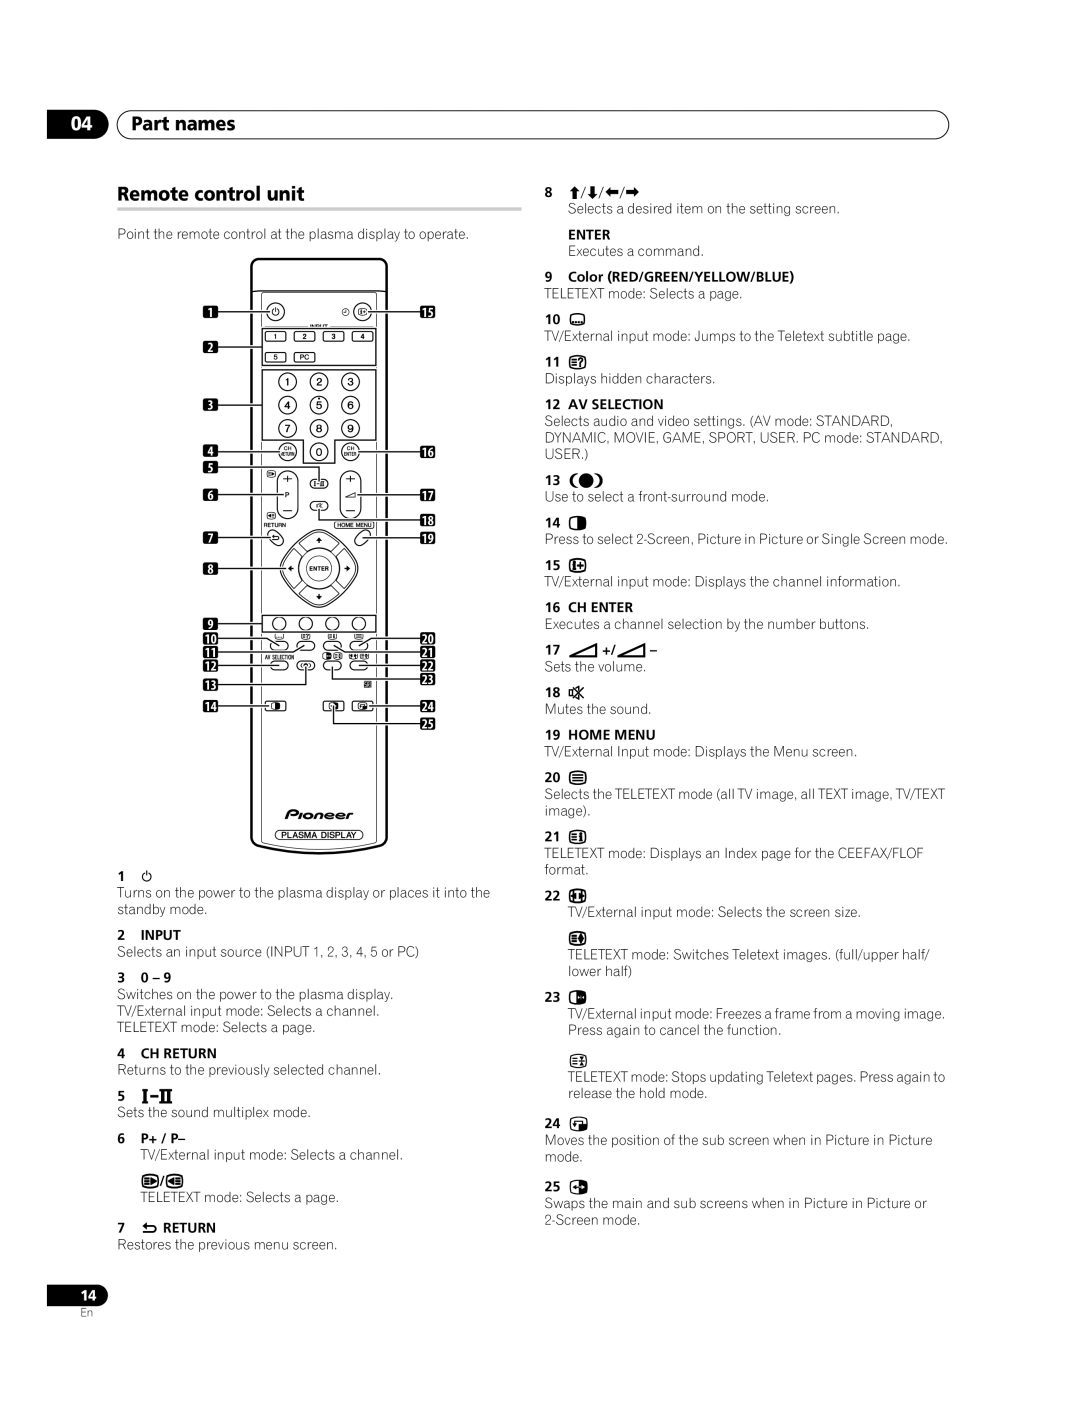 Pioneer PDP-427XG manual Part names Remote control unit, 11 k, 13 h, 14 c, 15 p, 17 i +/i, 18 e, 20 m, 21 l, 22 f, 23 d 